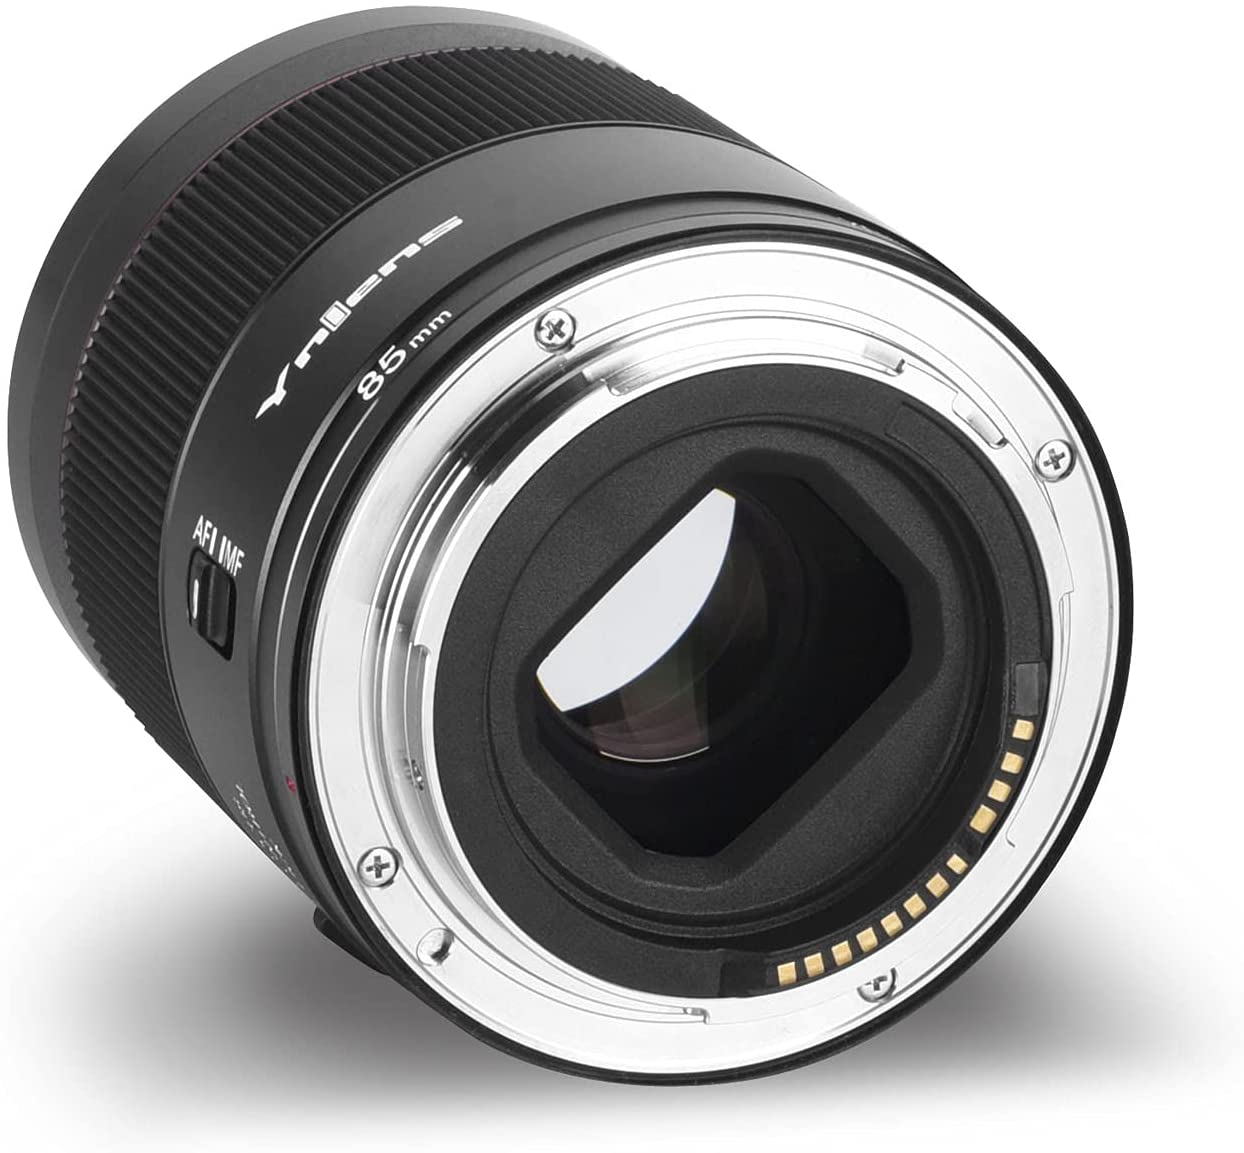 Yongnuo ra mắt lens YN 85mm F1.8R DF DSM cho dòng máy ảnh Canon EOS R